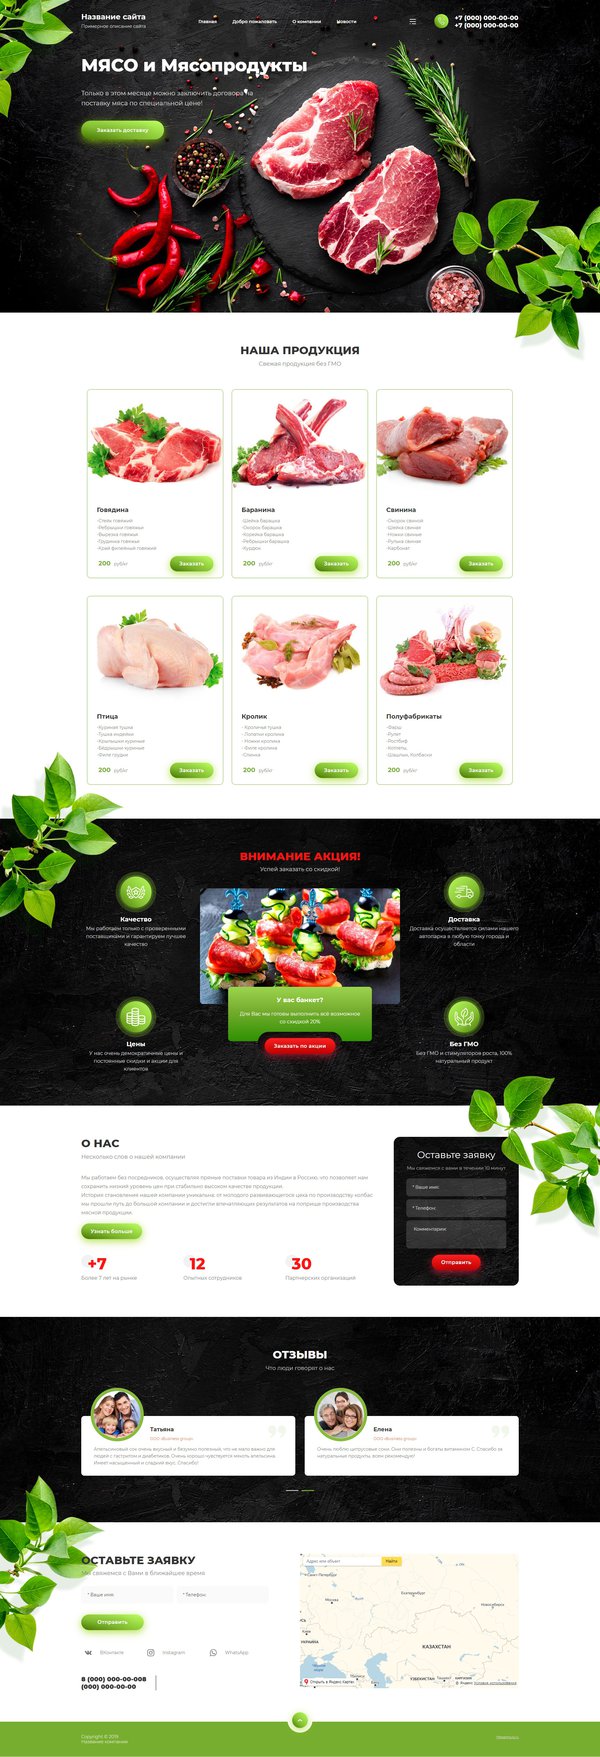 Готовый Сайт-Бизнес № 2520737 - Мясо и мясопродукты (Десктопная версия)